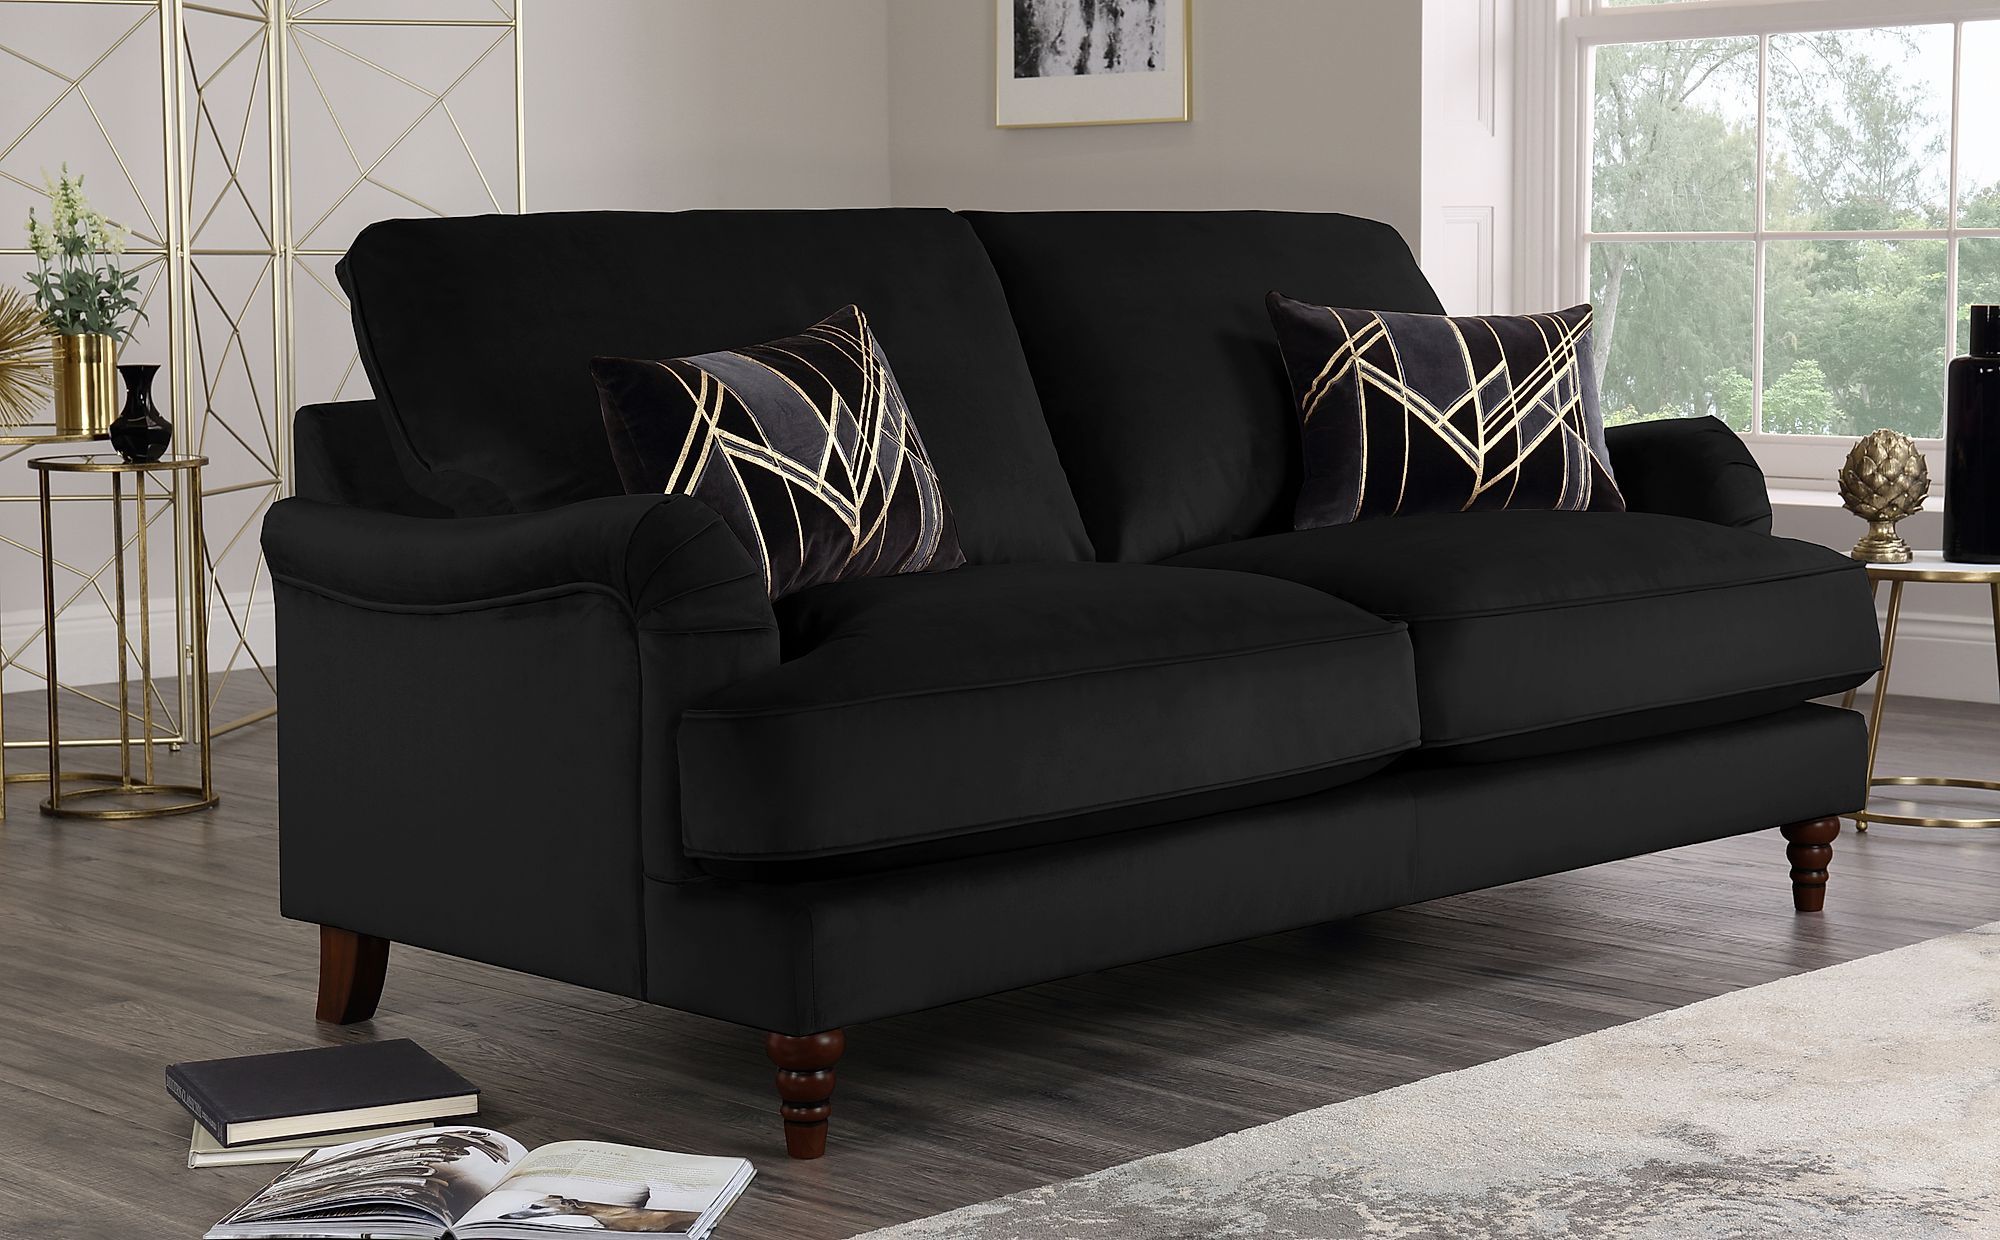 Charleston Black Velvet 3 Seater Sofa | Furniture Choice Throughout Black Velvet Sofas (Gallery 2 of 20)